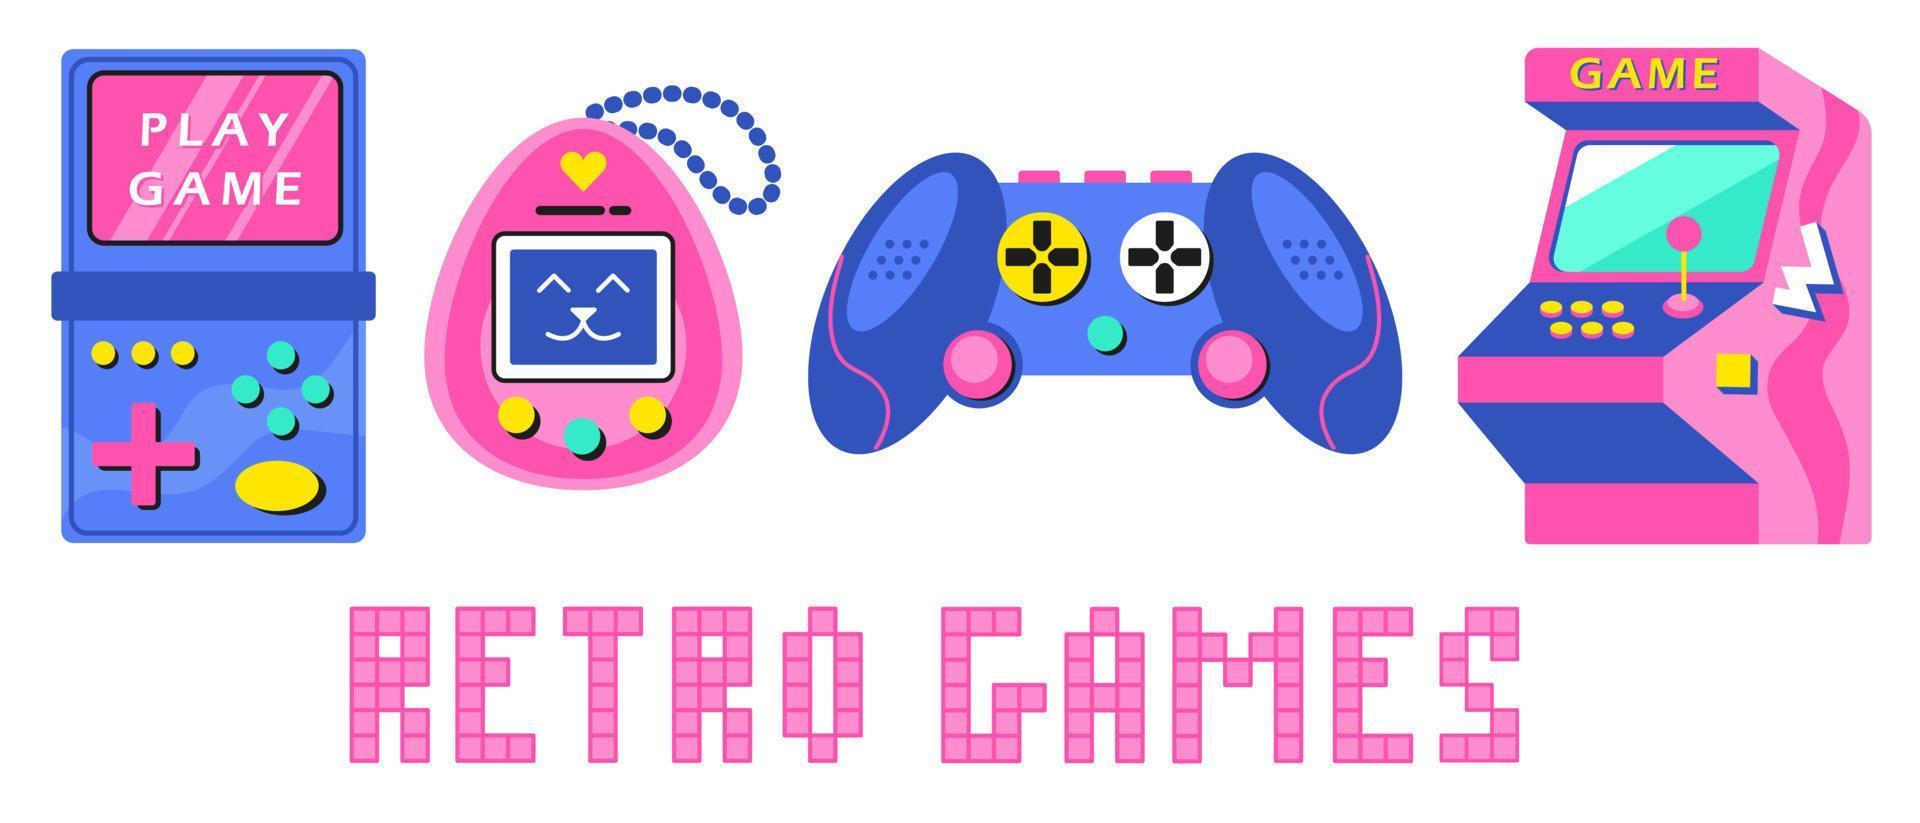 eine Reihe von Retro-Spielen der 90er, 80er Jahre. alte elektronische spiele tamagotchi, joystick, konsole, arcade, spielautomat vektor